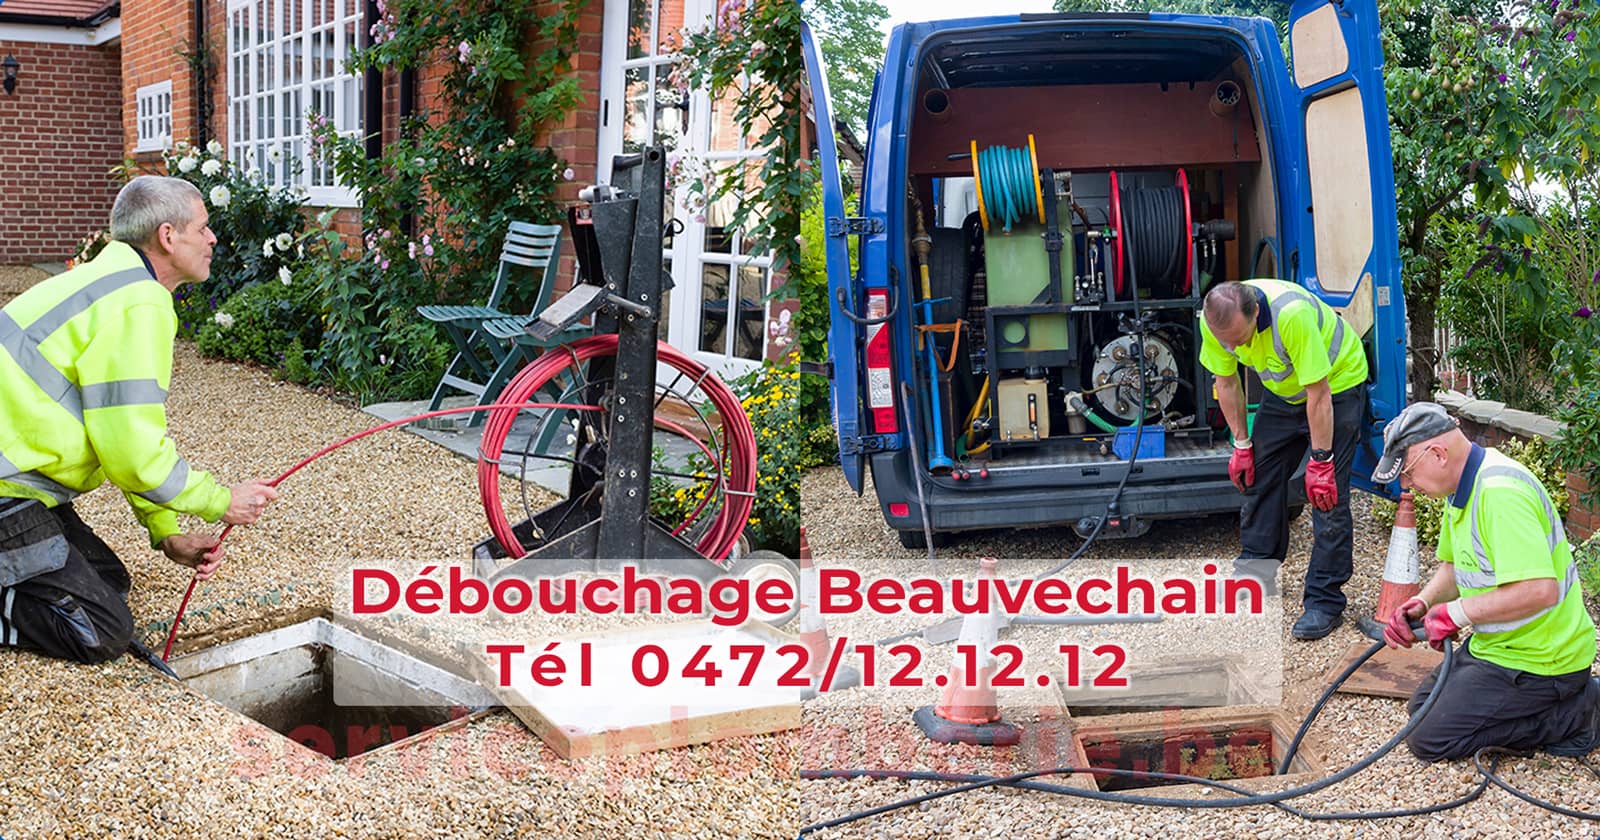 Débouchage Beauvechain d'égout Service Plomberie Tél 0472/12.12.12